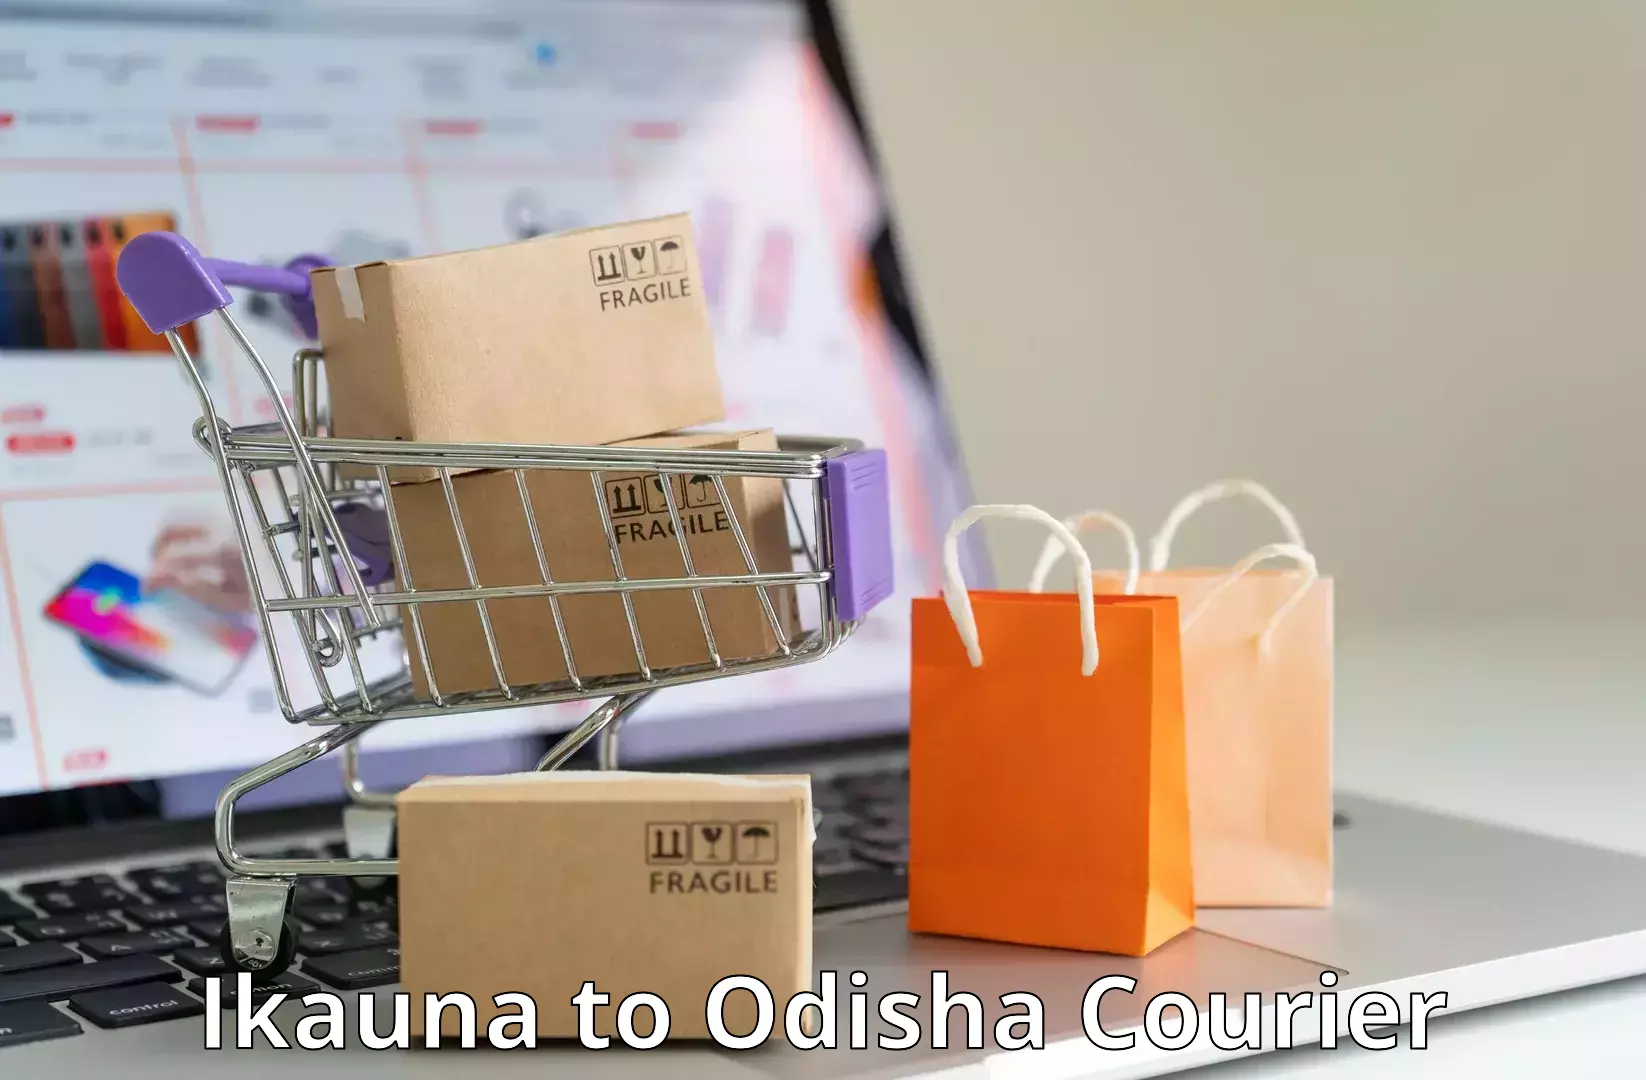 Custom courier packaging Ikauna to Mangalpur